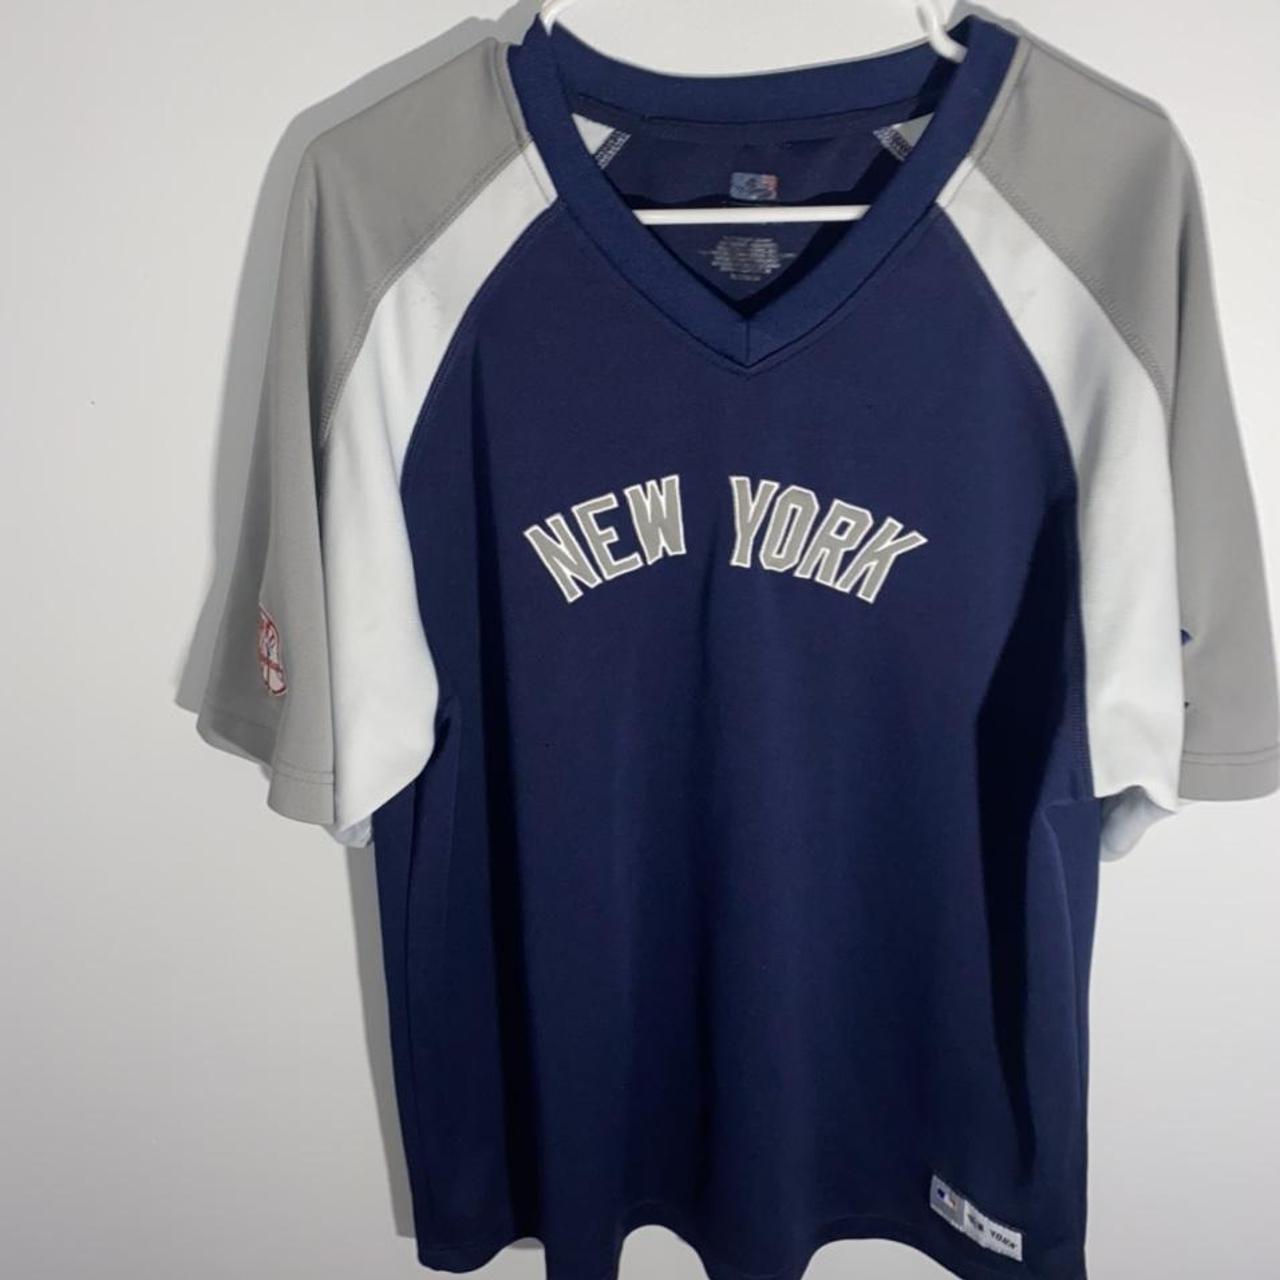 Vintage Yankees warmup jersey #yankees #mlb - Depop